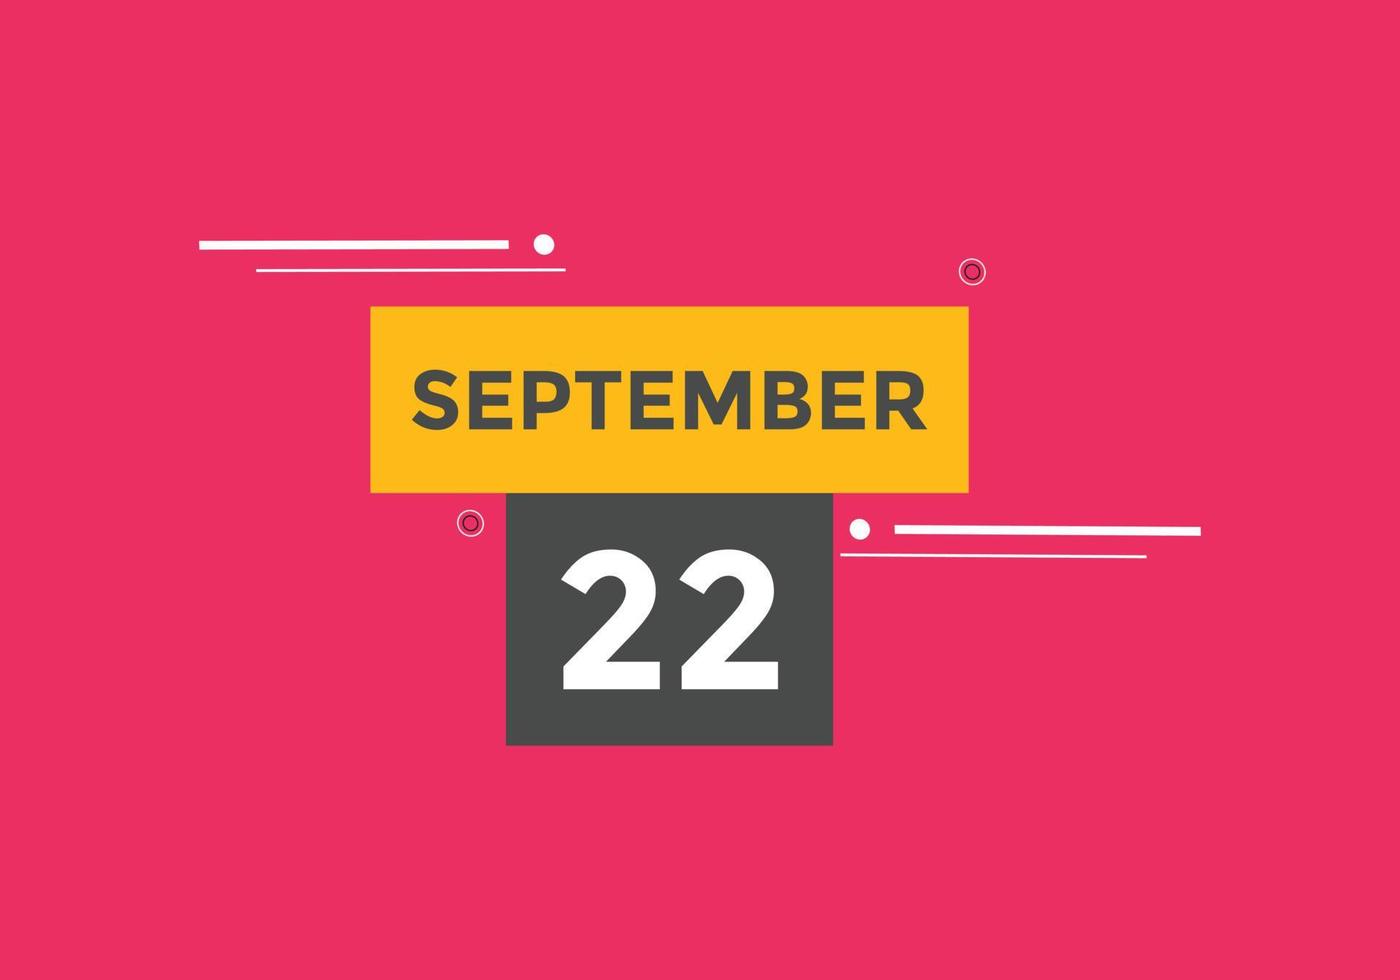 22. September Kalendererinnerung. 22. september tägliche kalendersymbolvorlage. Kalender 22. September Icon-Design-Vorlage. Vektor-Illustration vektor